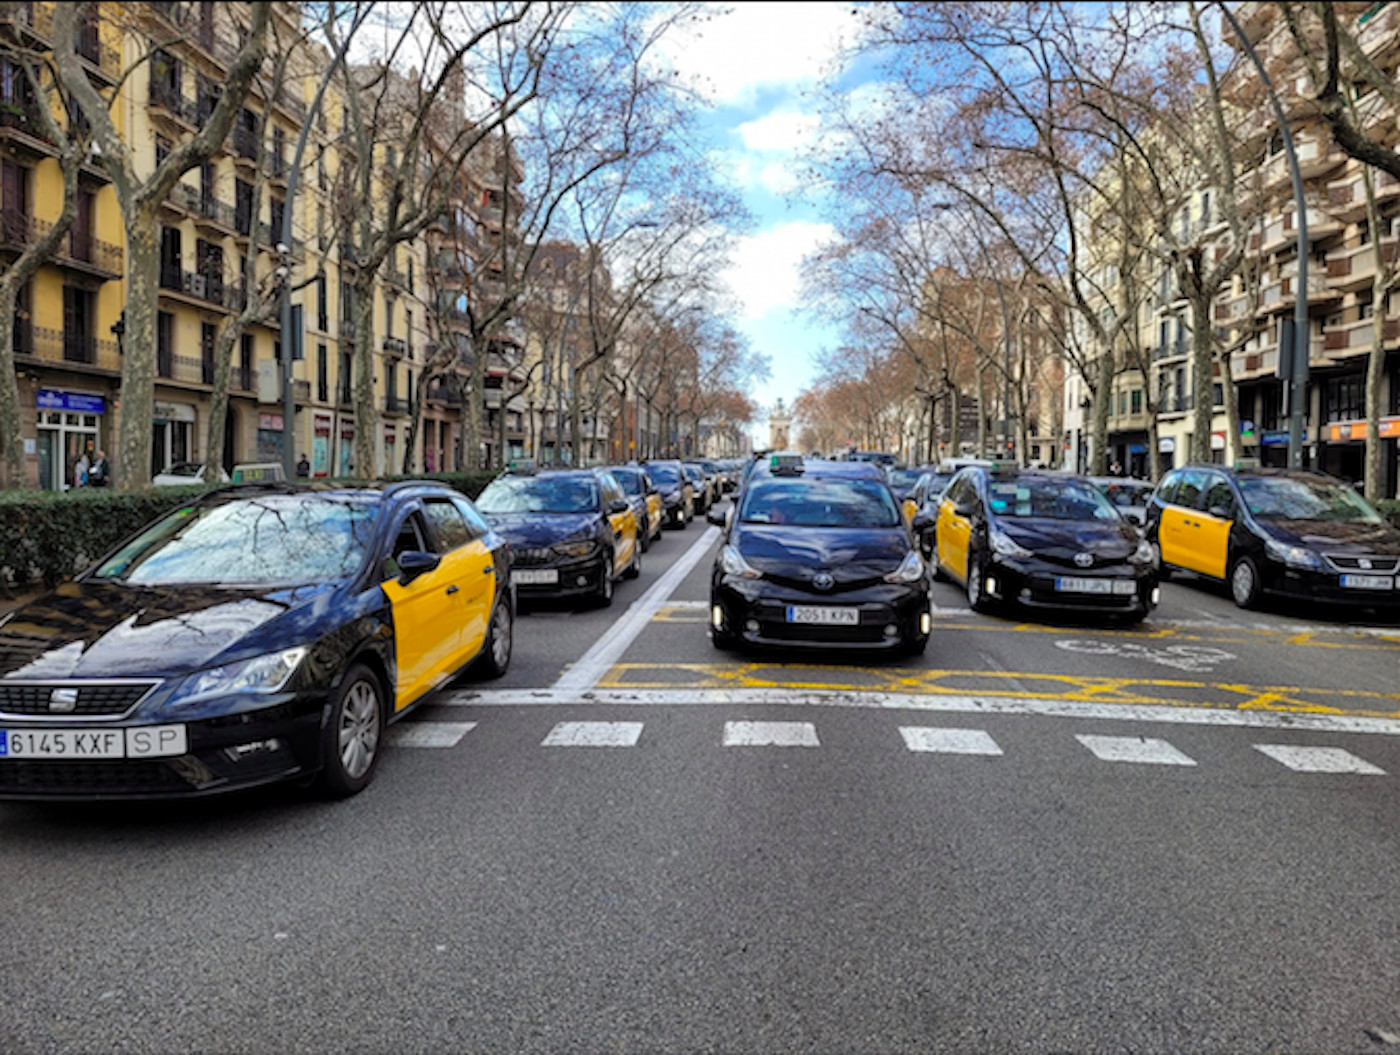 Taxistas colapsando la Gran Via de Barcelona en protesta contra Uber / METRÓPOLI